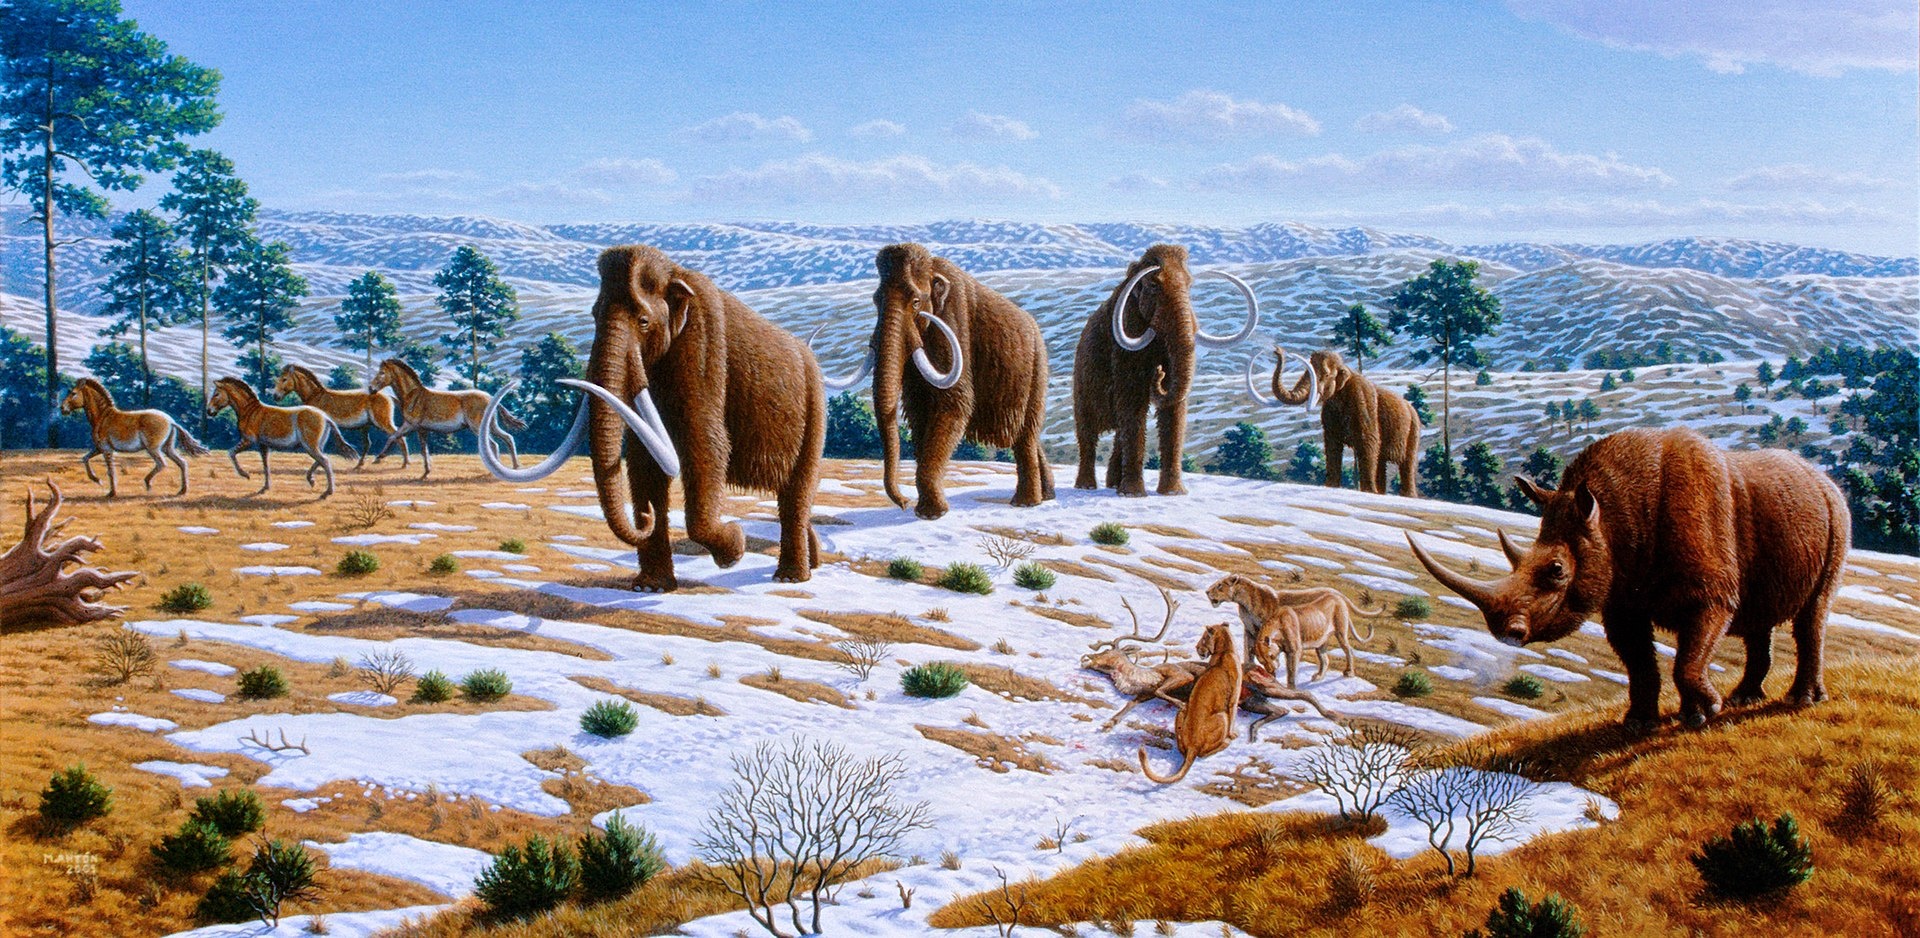 : Gemälde einer hügeligen, leicht mit Schnee bedeckten Landschaft, im Vordergrund vier Mammuts, rechts daneben ein toter Hirsch und zwei Raubkatzen, daneben ein Wollnashorn. Am linken Bildrand vier Urpferde.  © Wikimedia